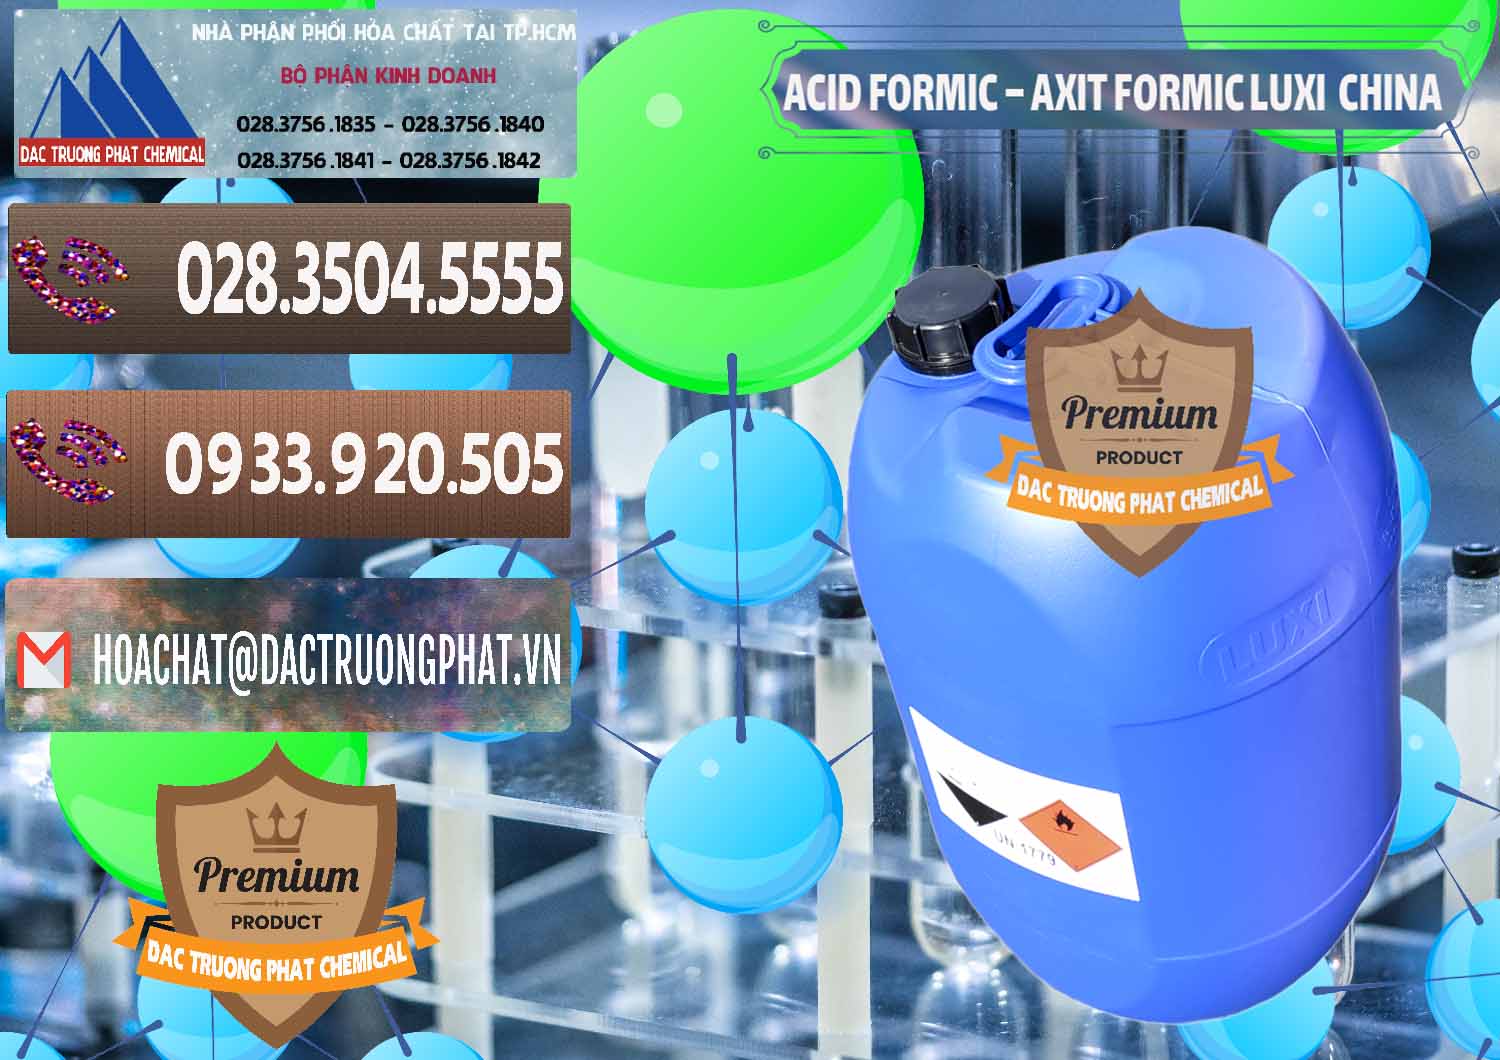 Chuyên bán & cung cấp Acid Formic - Axit Formic Luxi Trung Quốc China - 0029 - Công ty nhập khẩu và phân phối hóa chất tại TP.HCM - hoachatviet.net